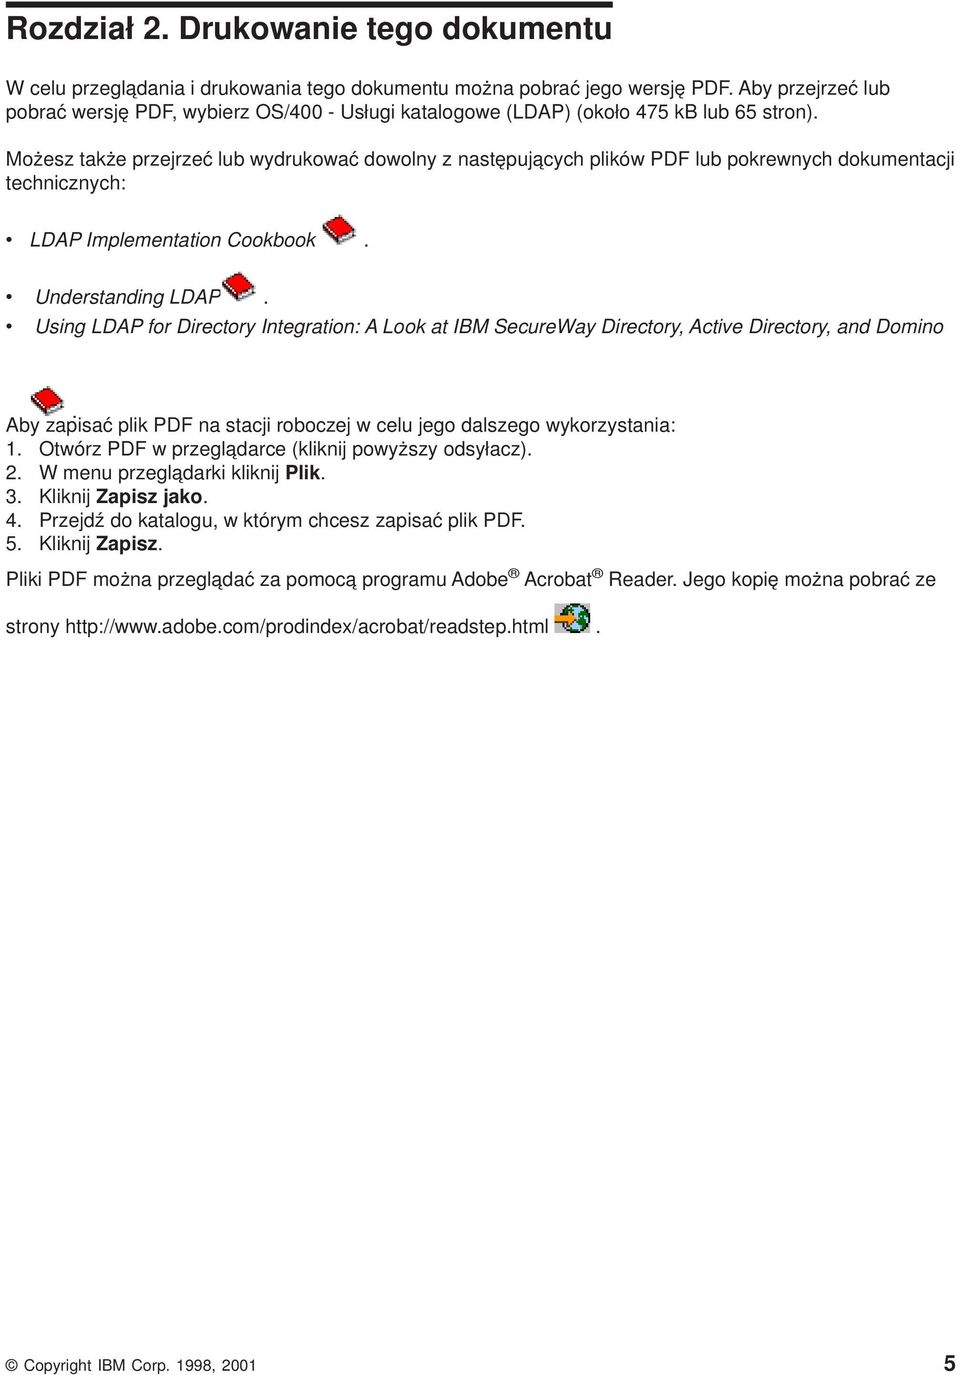 Możesz także przejrzeć lub wydrukować dowolny z następujących plików PDF lub pokrewnych dokumentacji technicznych: v LDAP Implementation Cookbook. v Understanding LDAP.